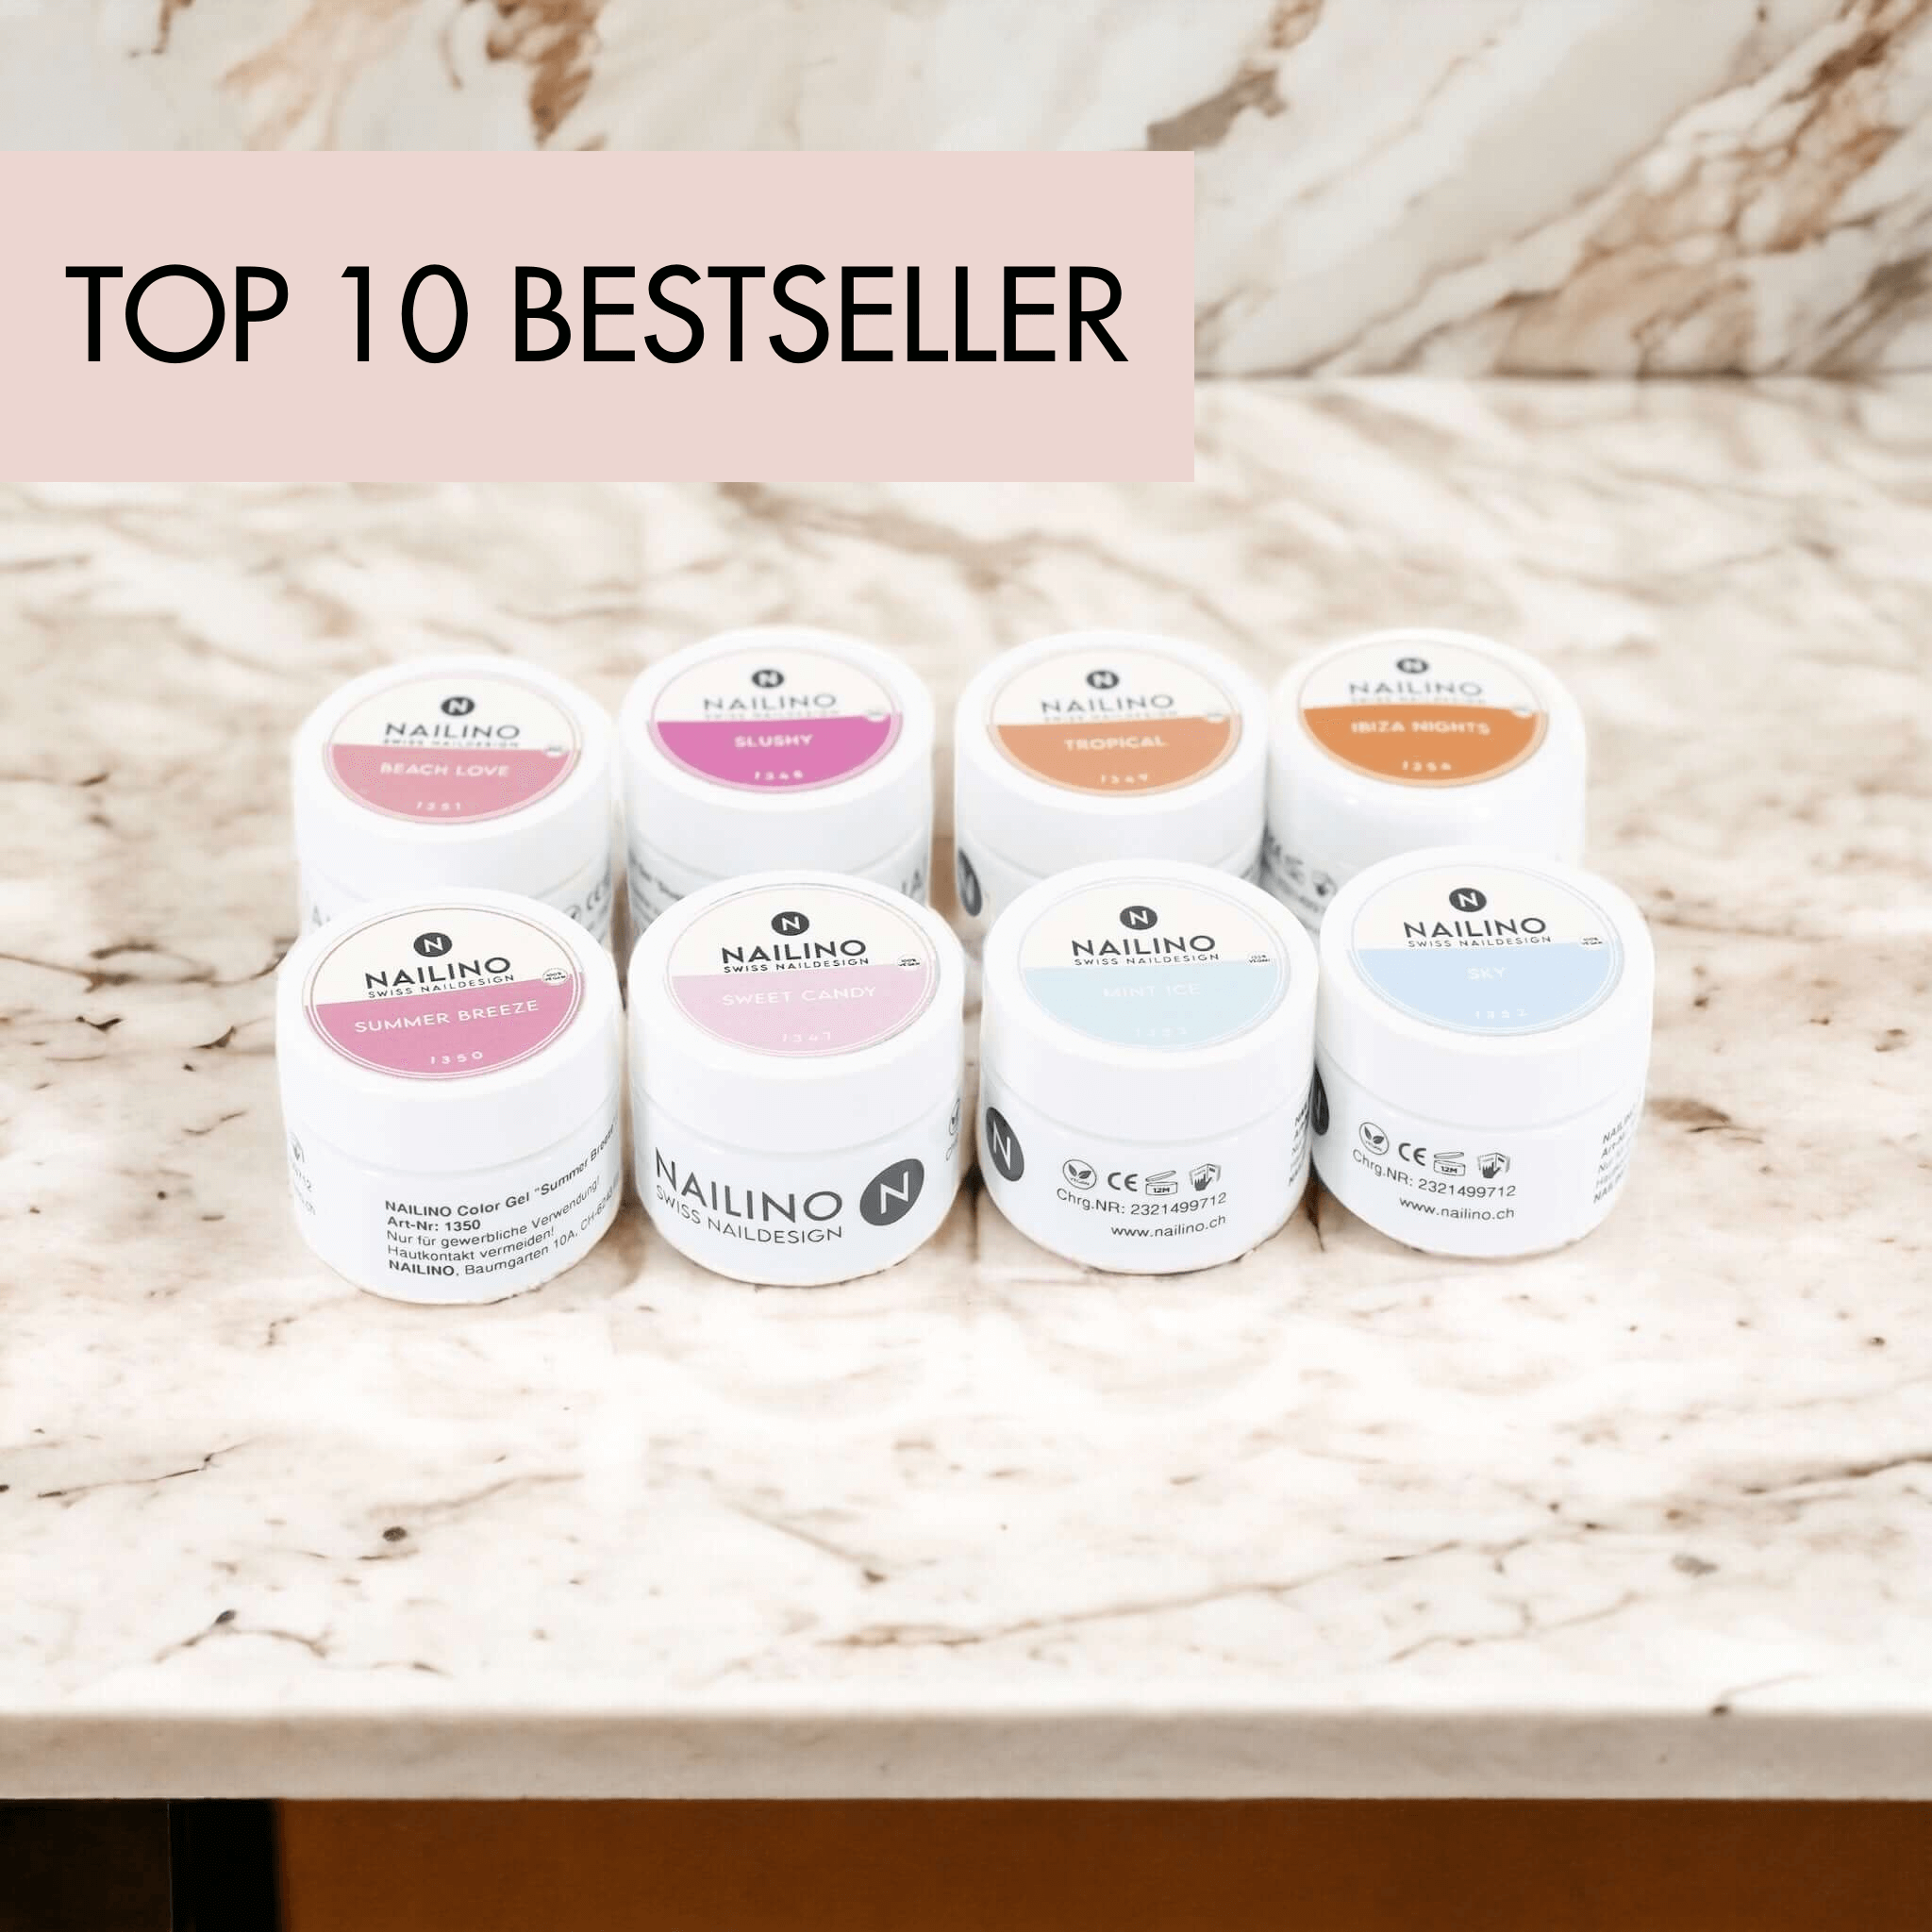 Top 10 Bestseller farbgel